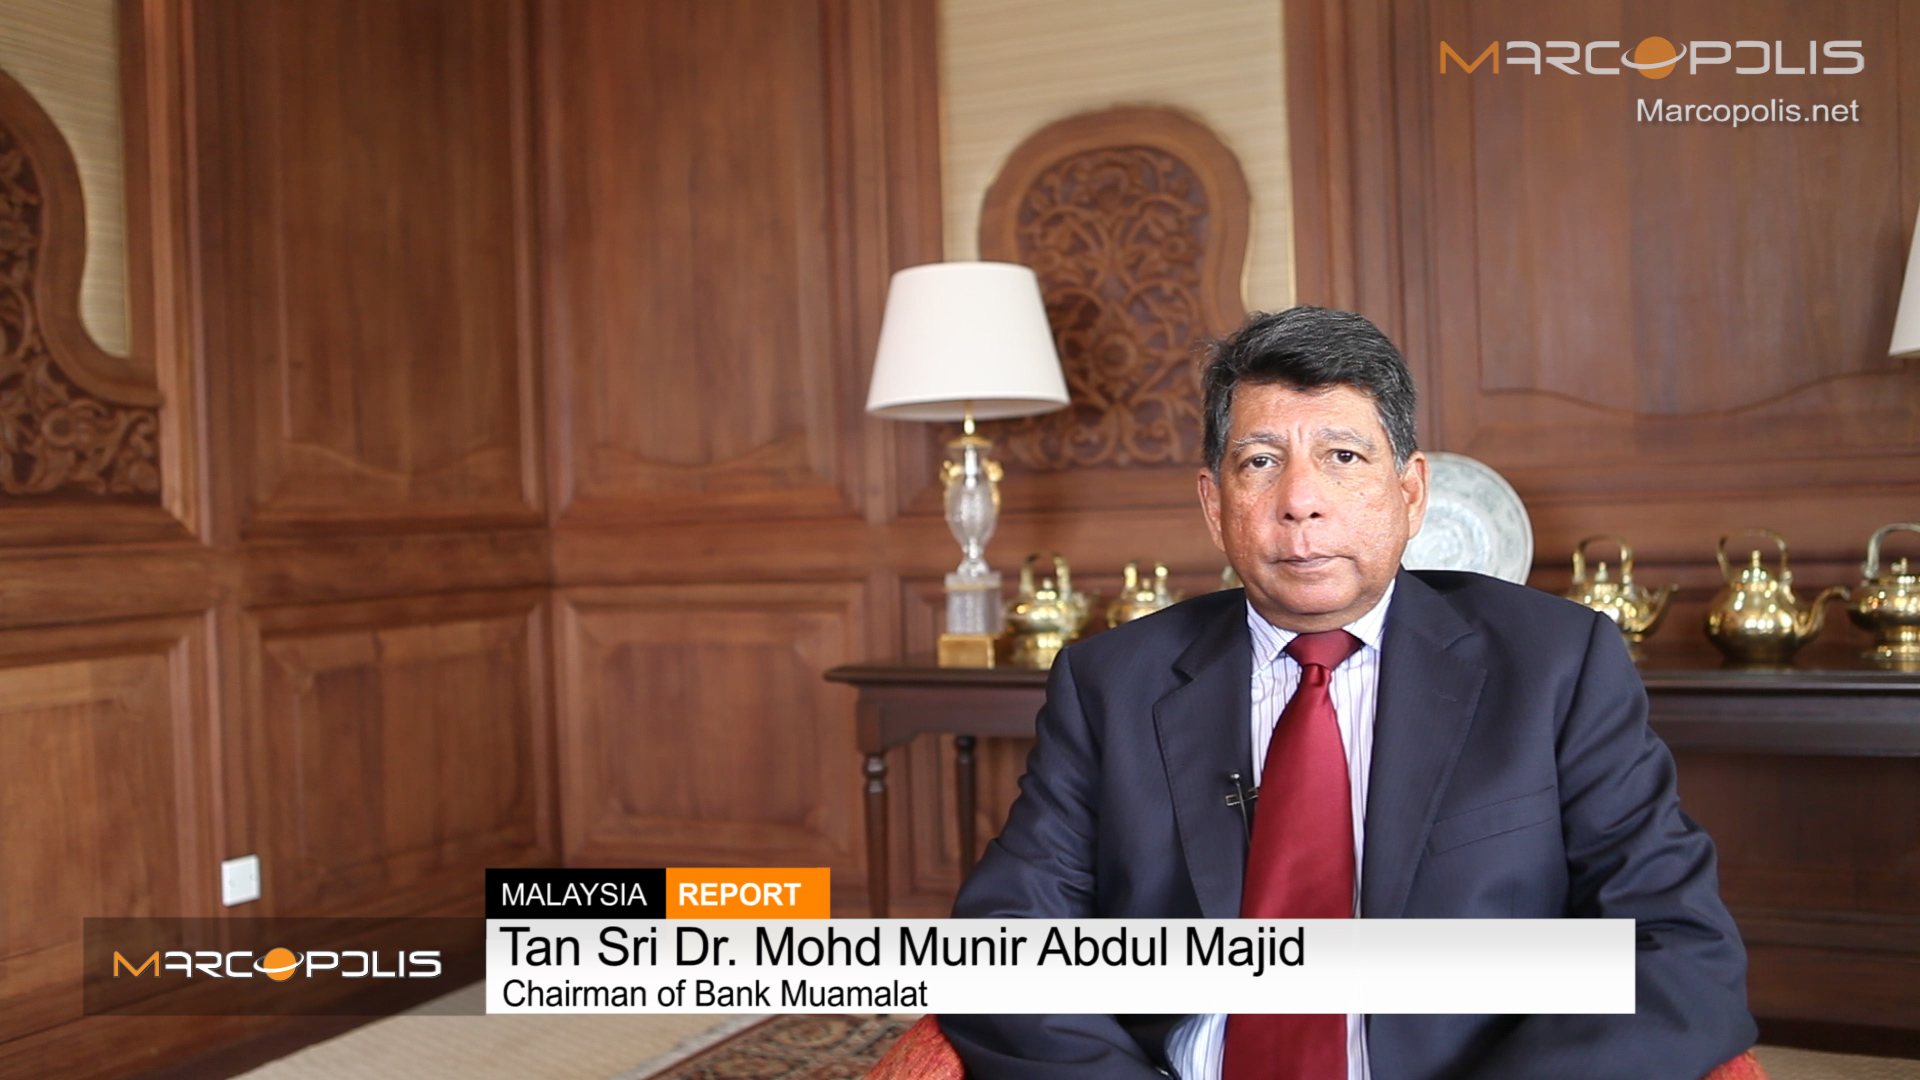 Tan Sri Dr. Mohd Munir Abdul Majid, Chairman of Bank Muamalat 